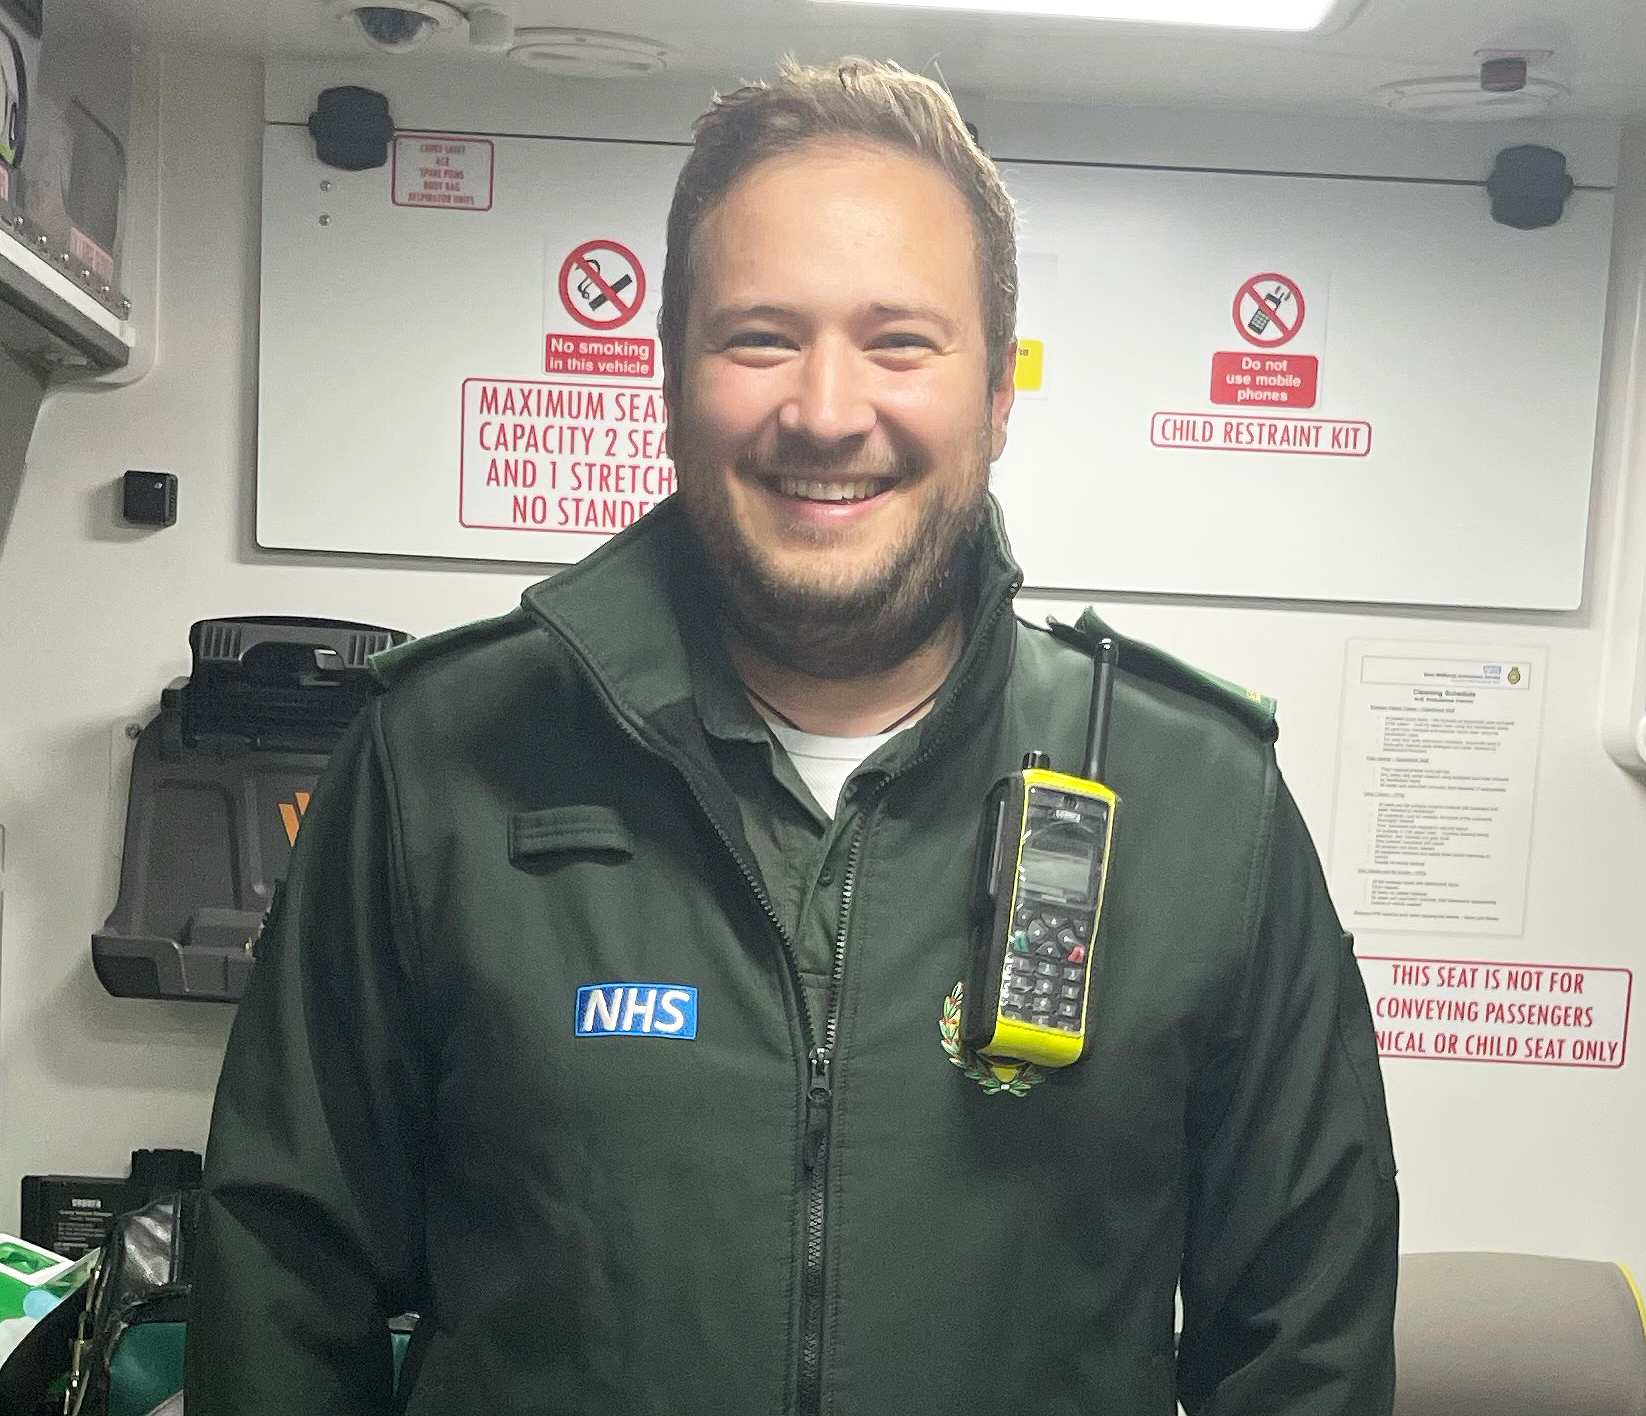 Aaron Jones at work in his NHS uniform